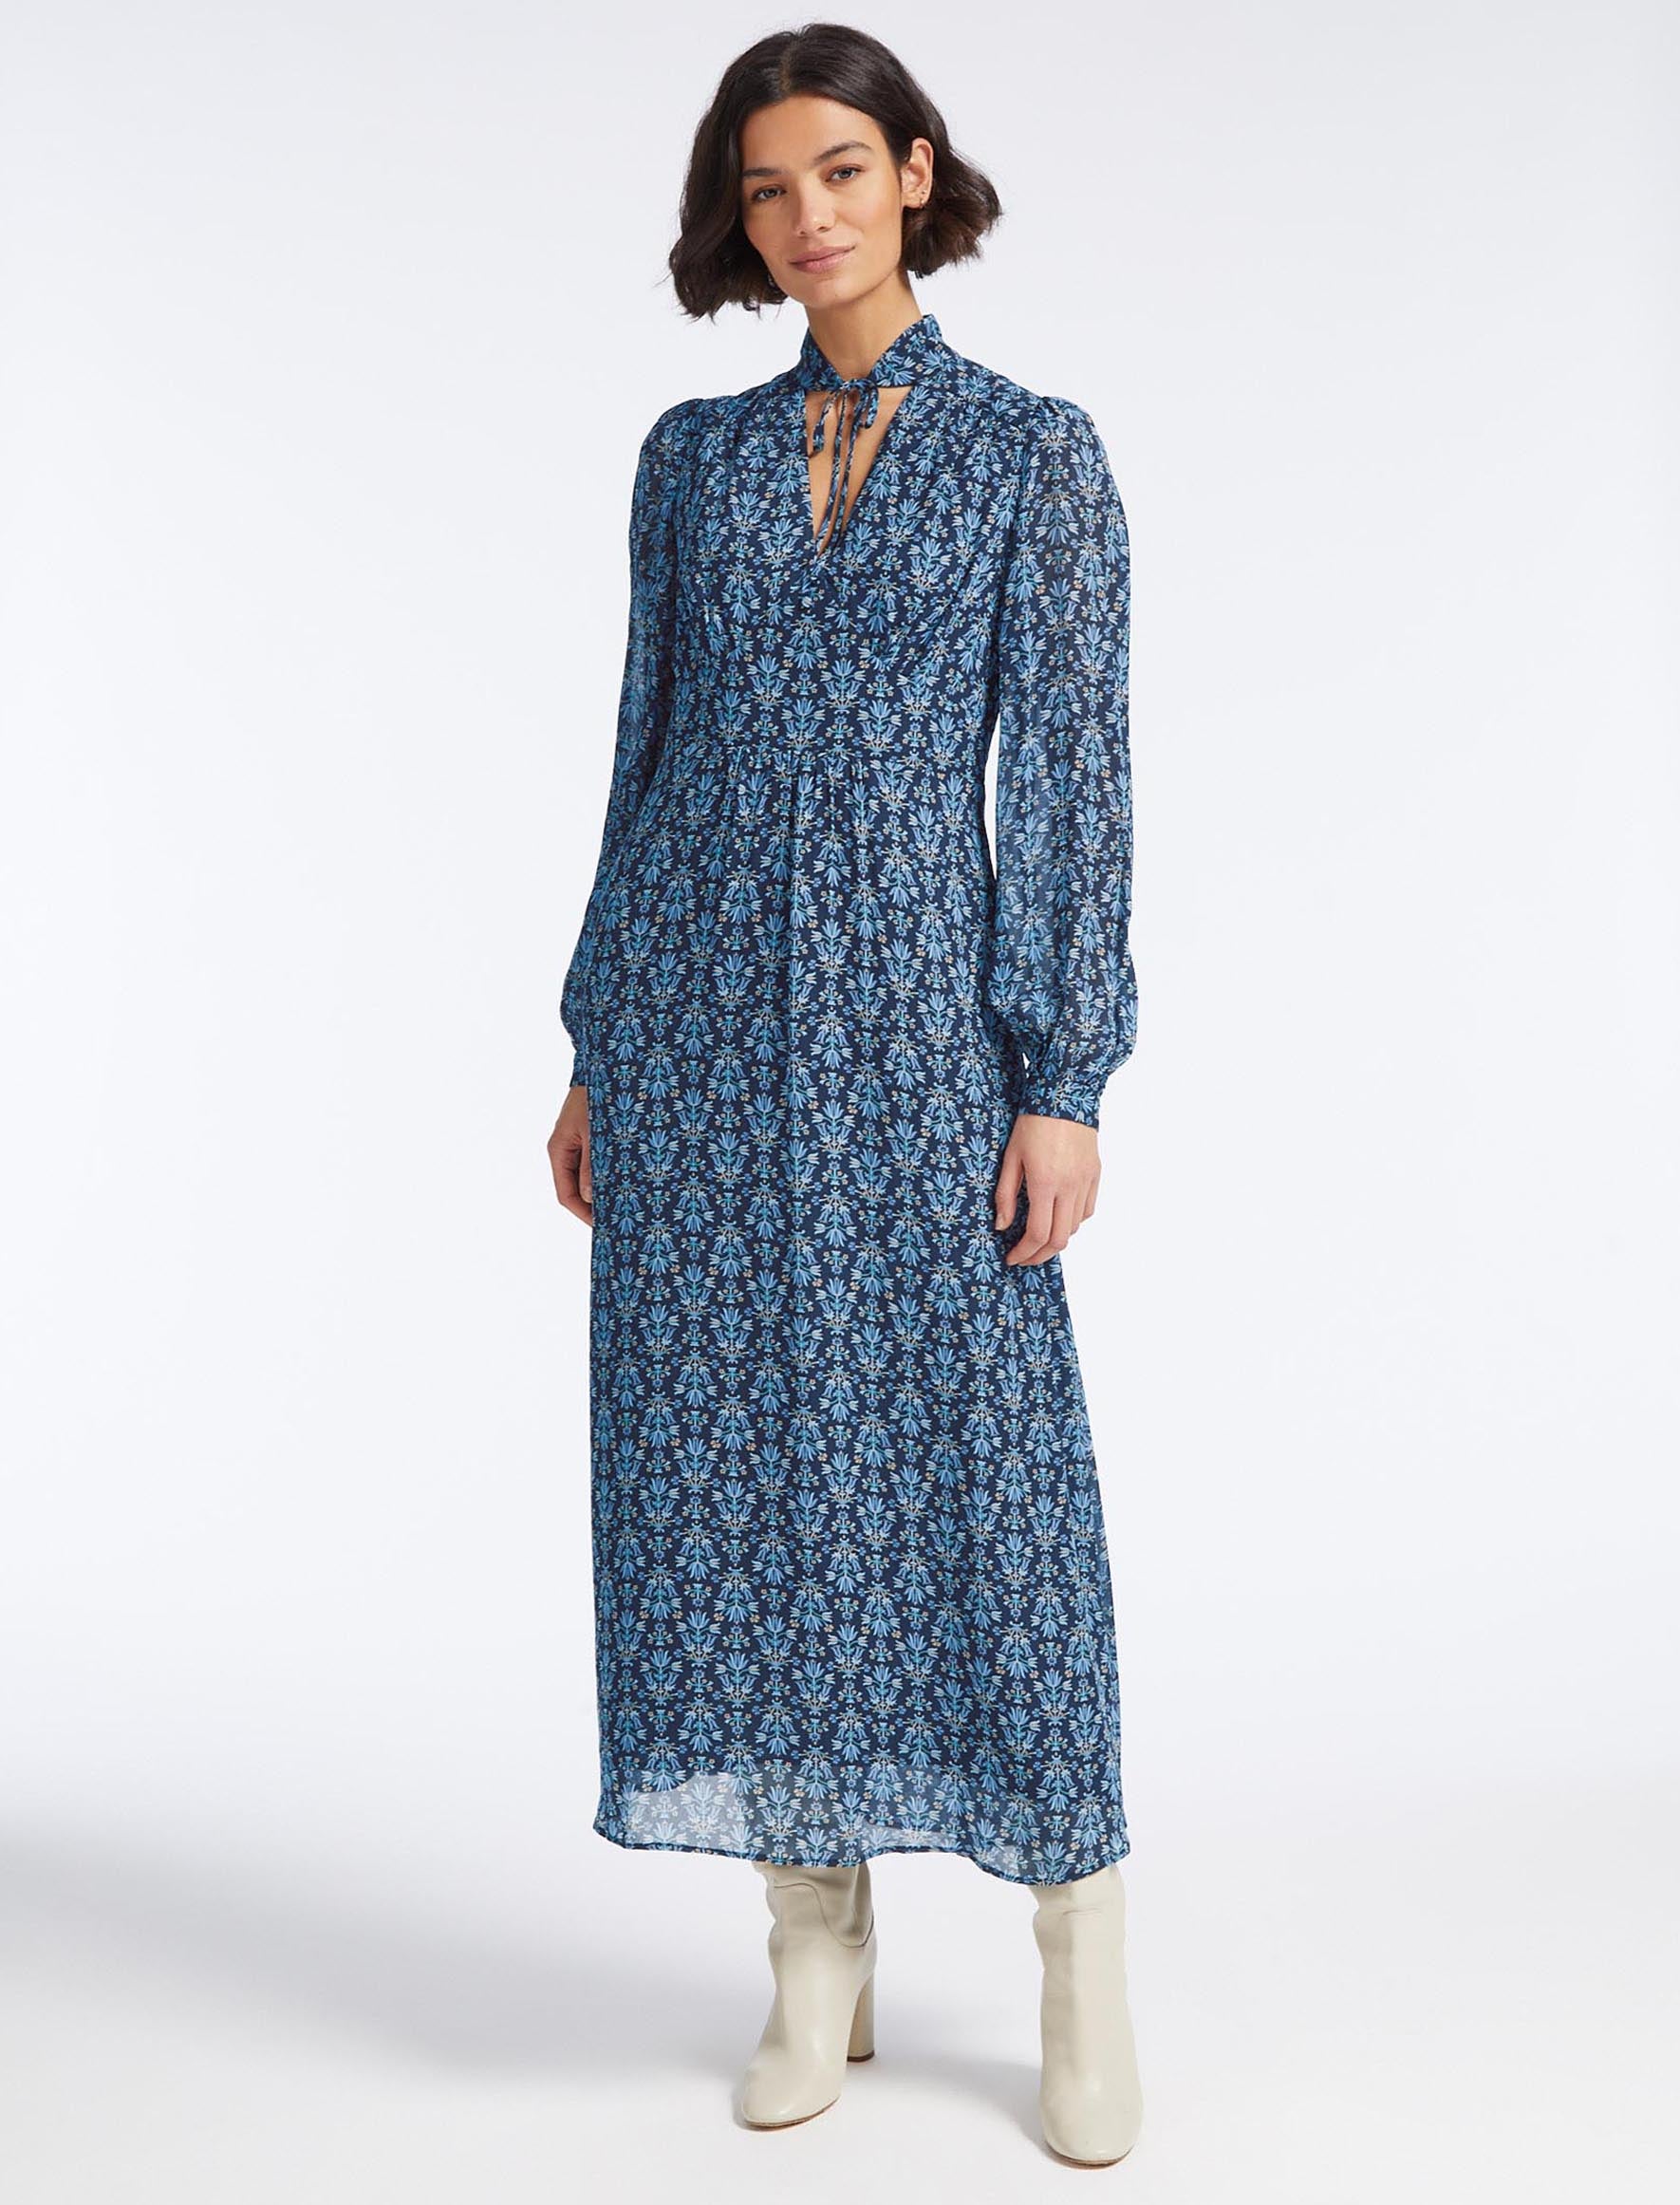 Cefinn Luella Maxi Dress - Blue Folk Floral Print